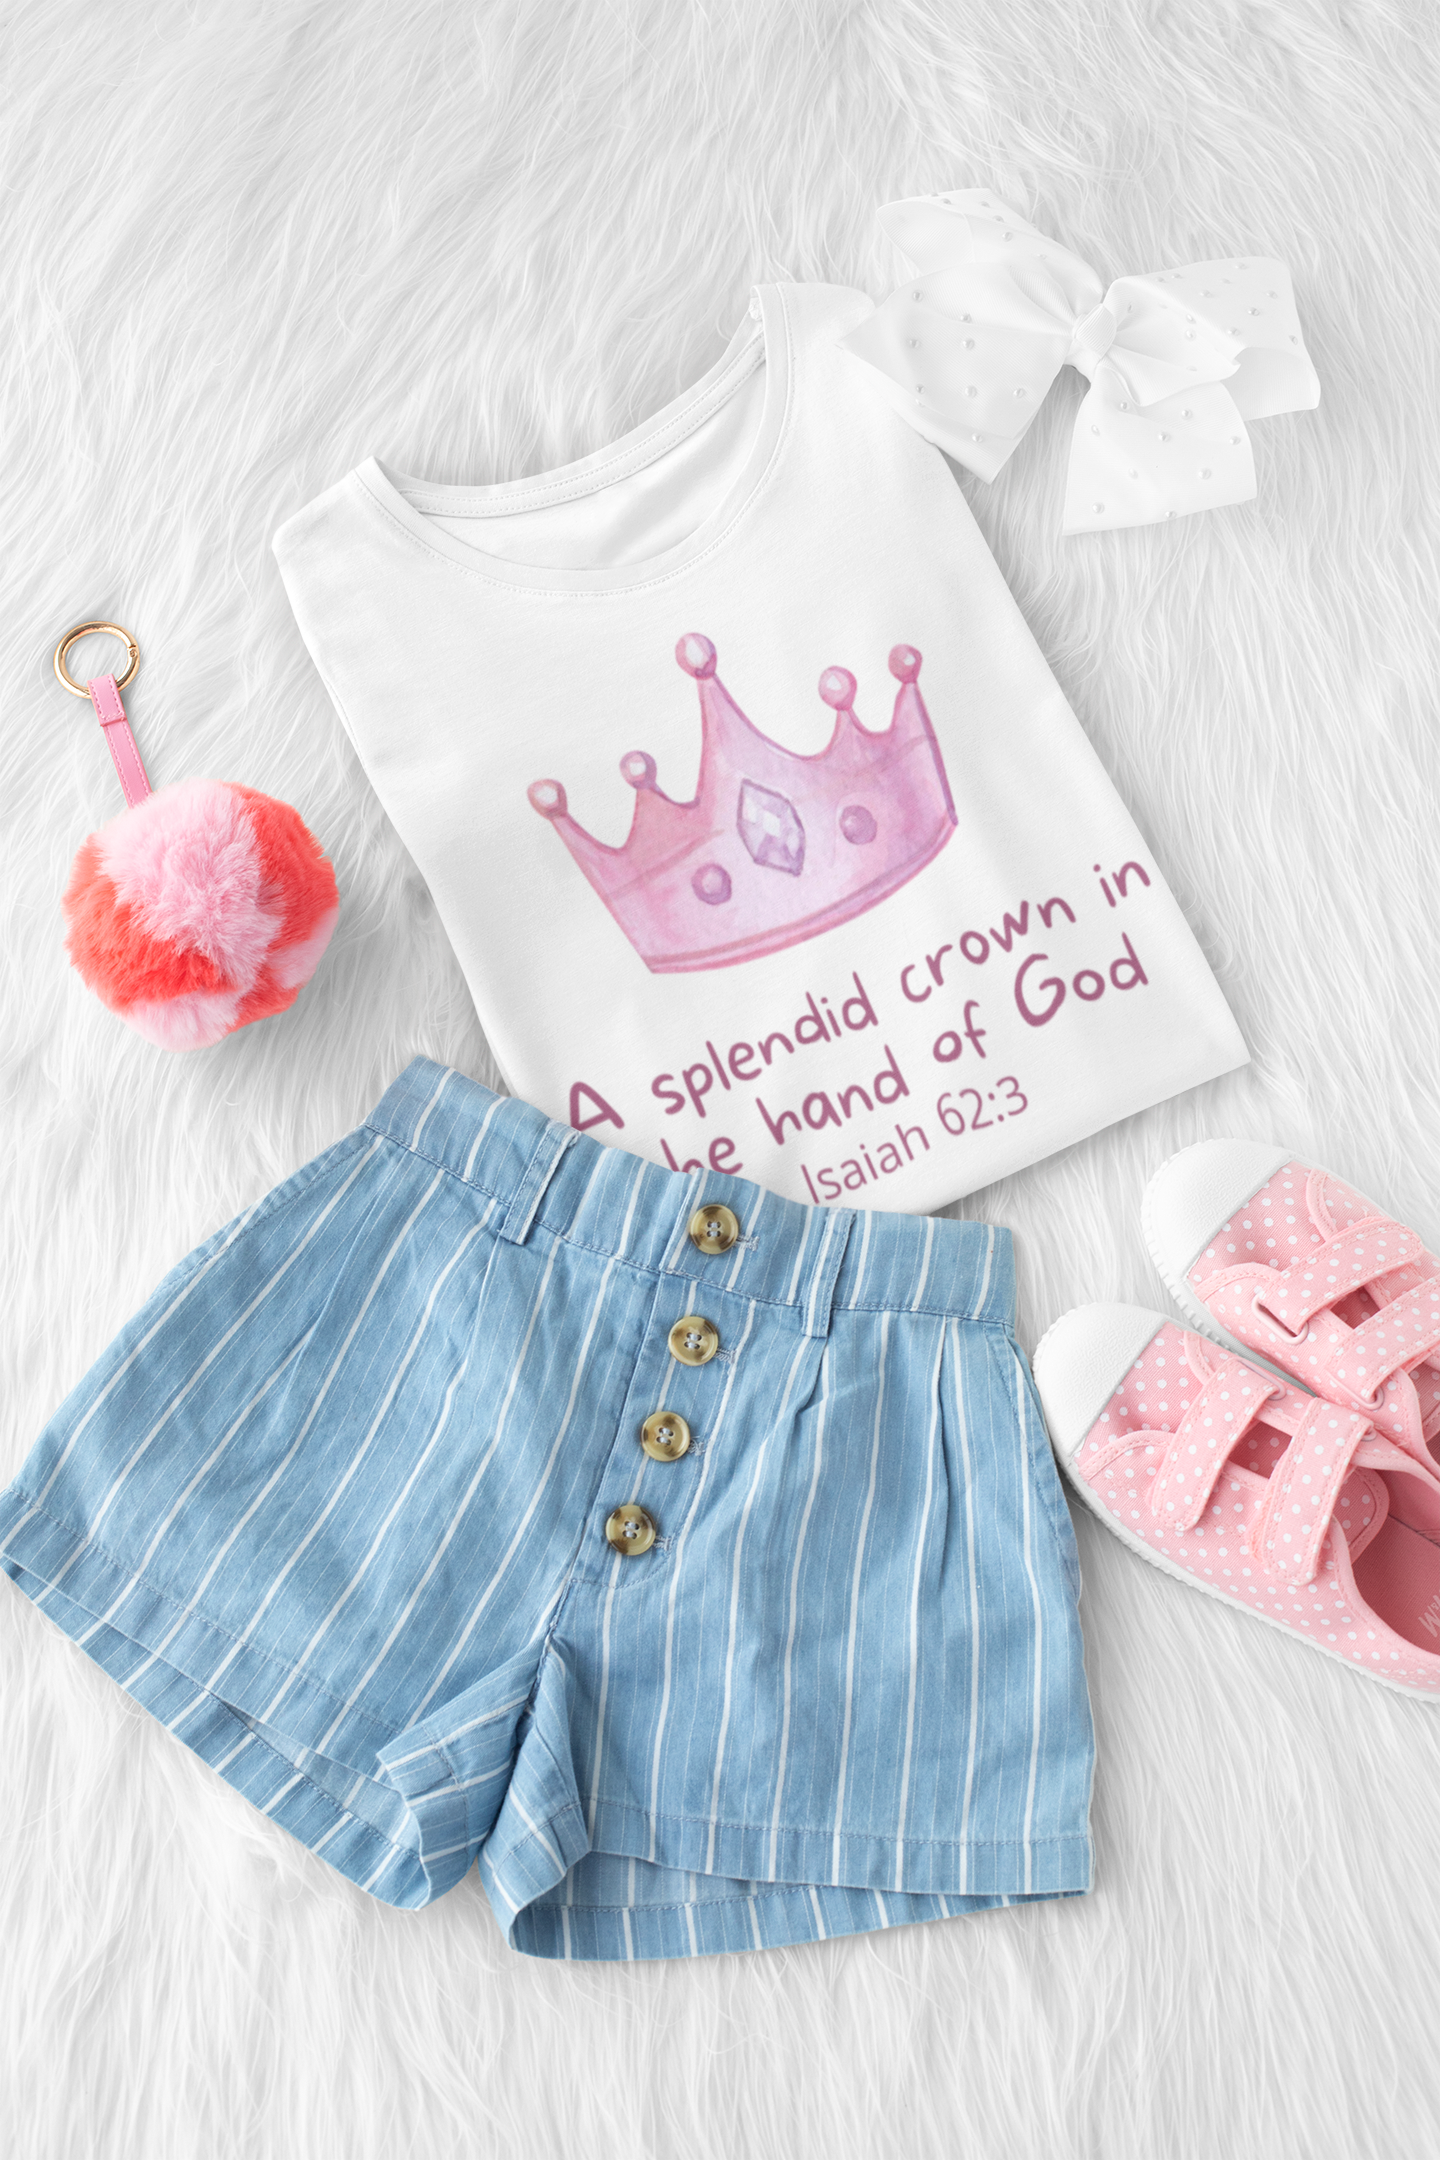 a splendid crown toddler t-shirt